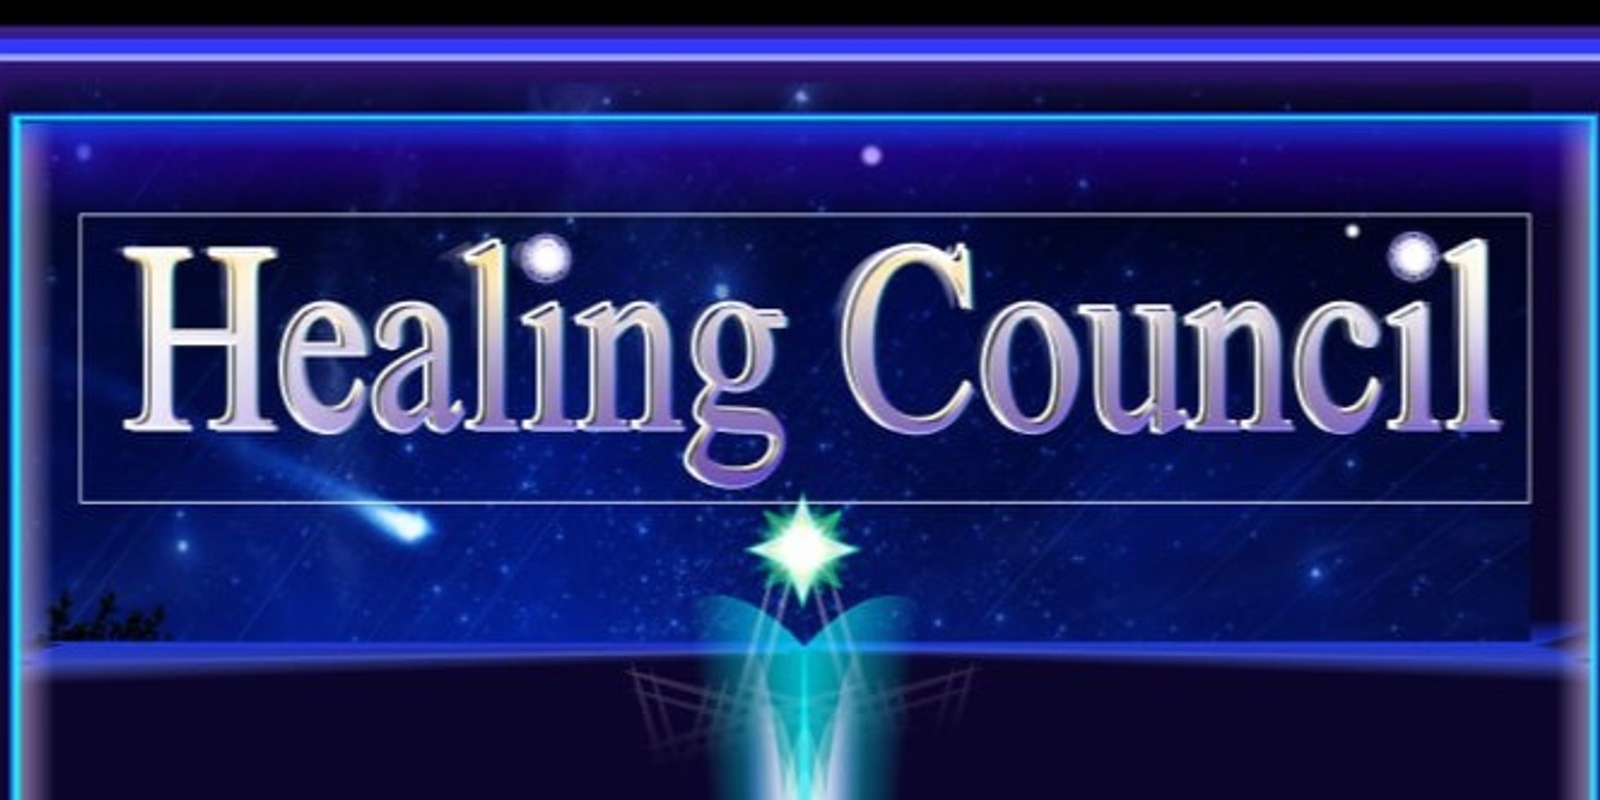 Healing Council's banner